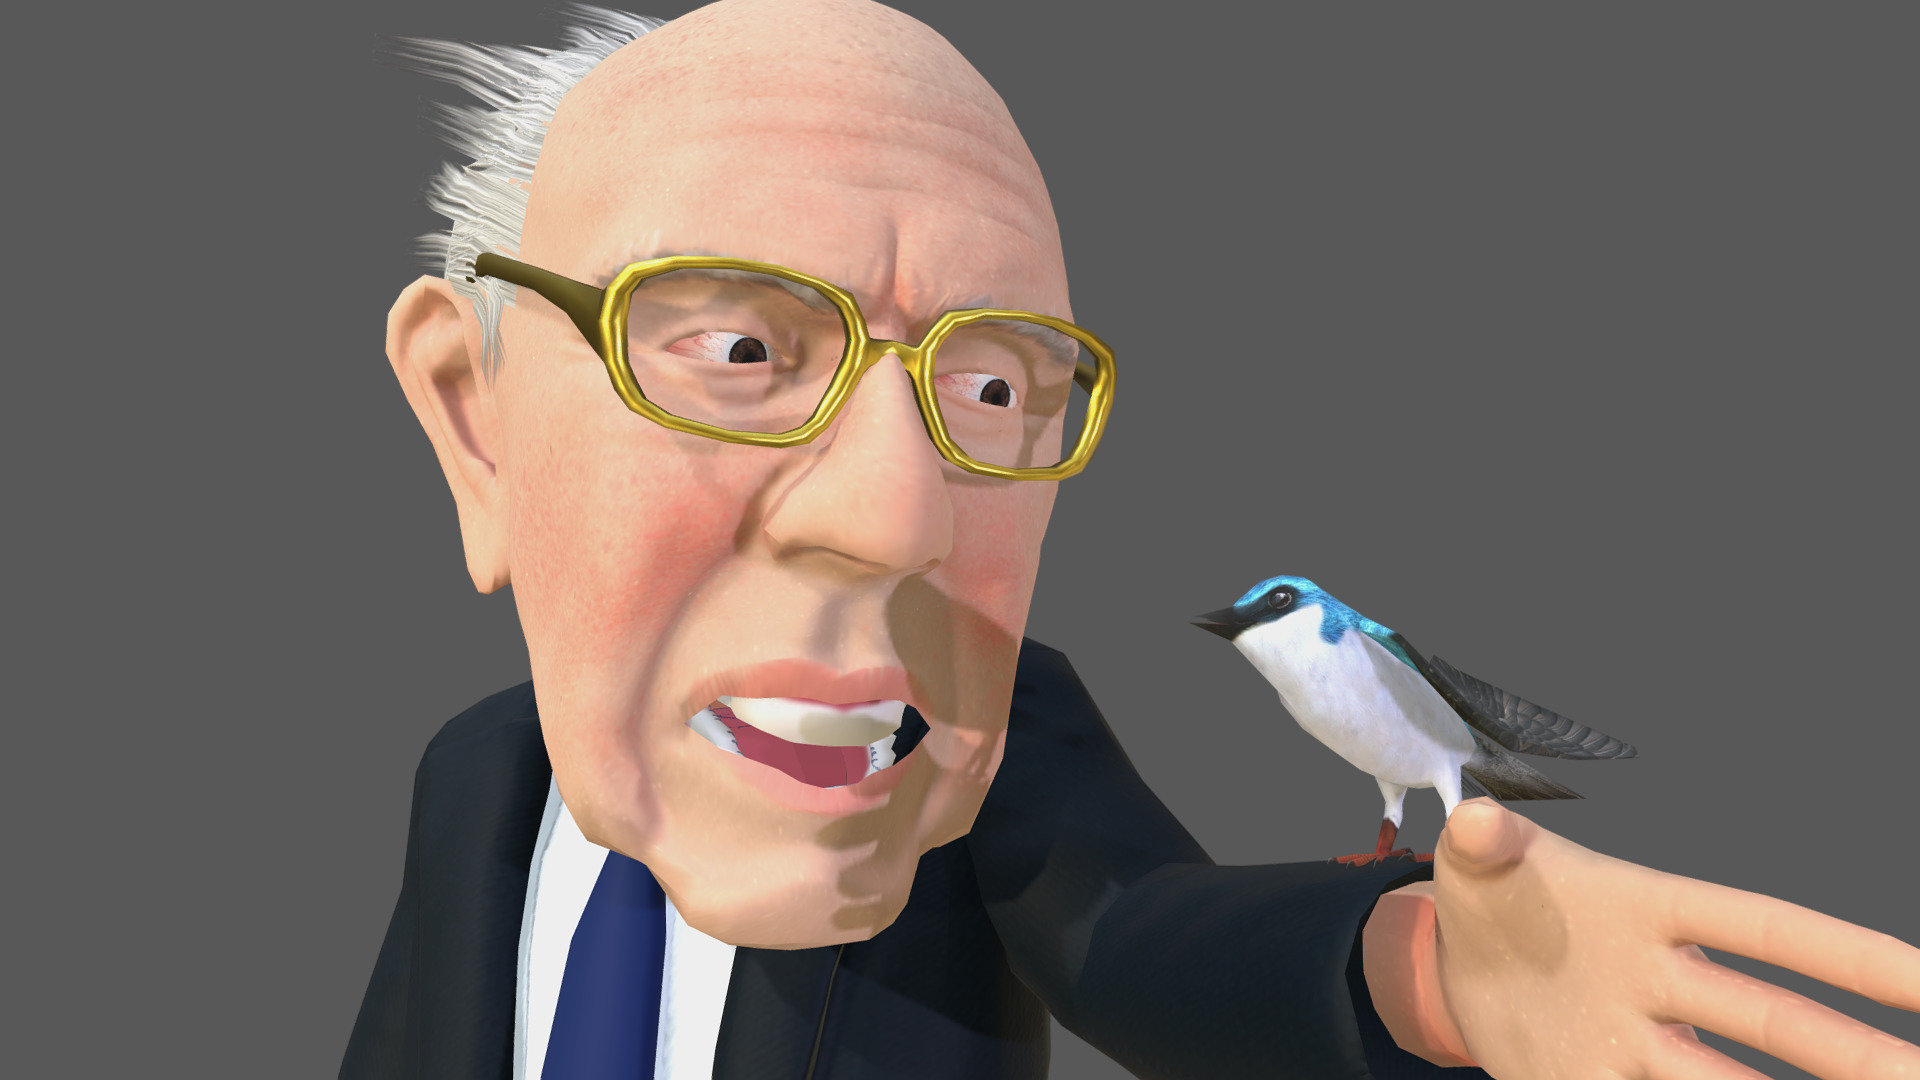 Bernie with bird animation